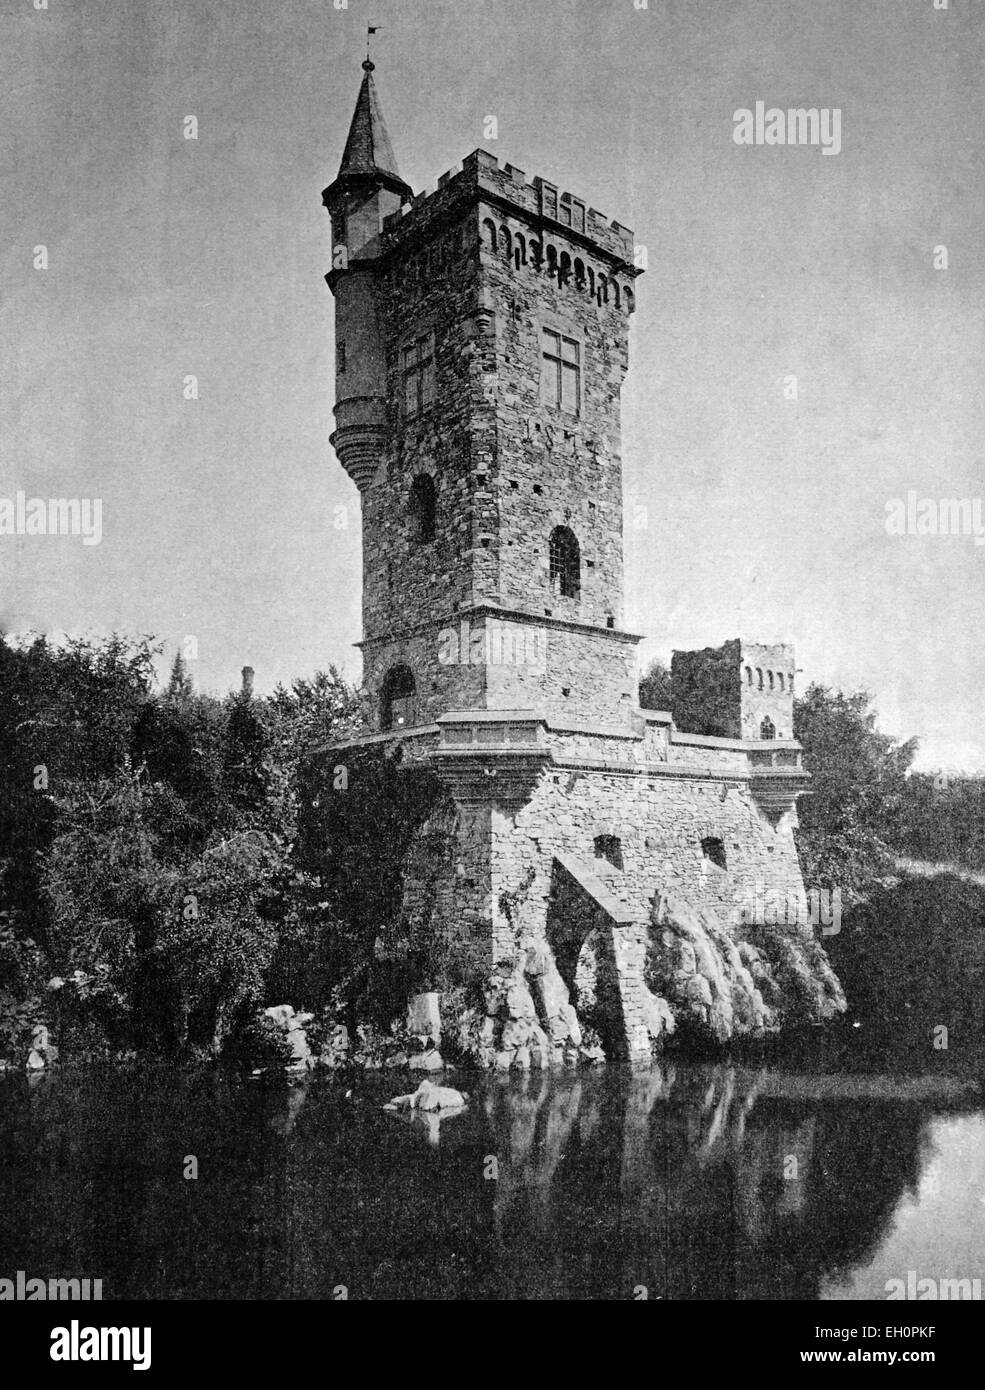 Frühe Autotype des Binger Maeuseturm Turms, UNESCO-Weltkulturerbe, Bingen am Rhein, Rheinland-Pfalz, Deutschland, historisches Foto, 1884 Stockfoto